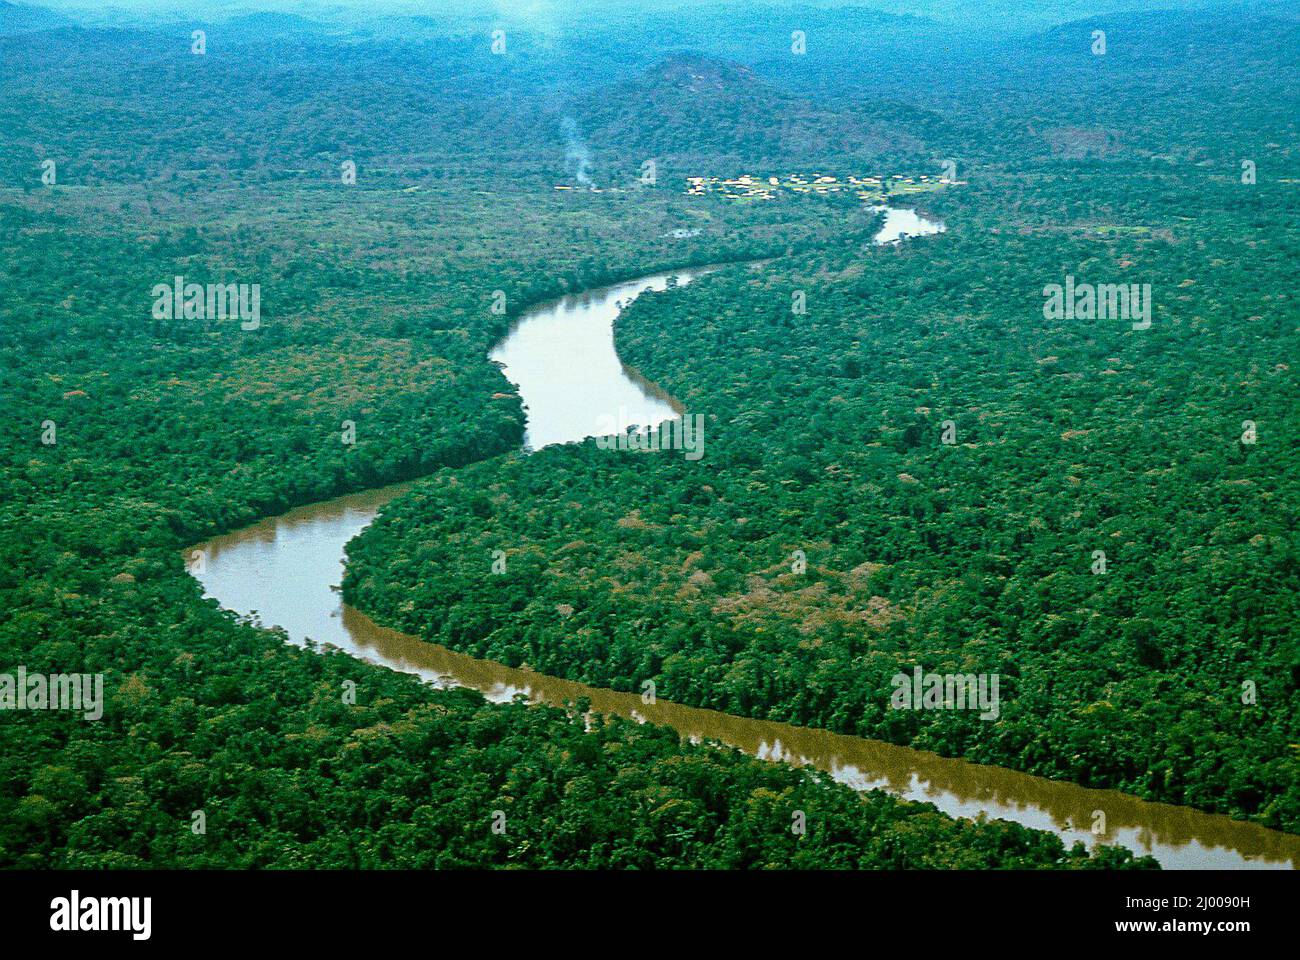 Самая полноводная река бразилии. Река Амазонка. Река Амазонка река Амазонка. Бразилия Амазонская низменность. Исток реки Амазонка.